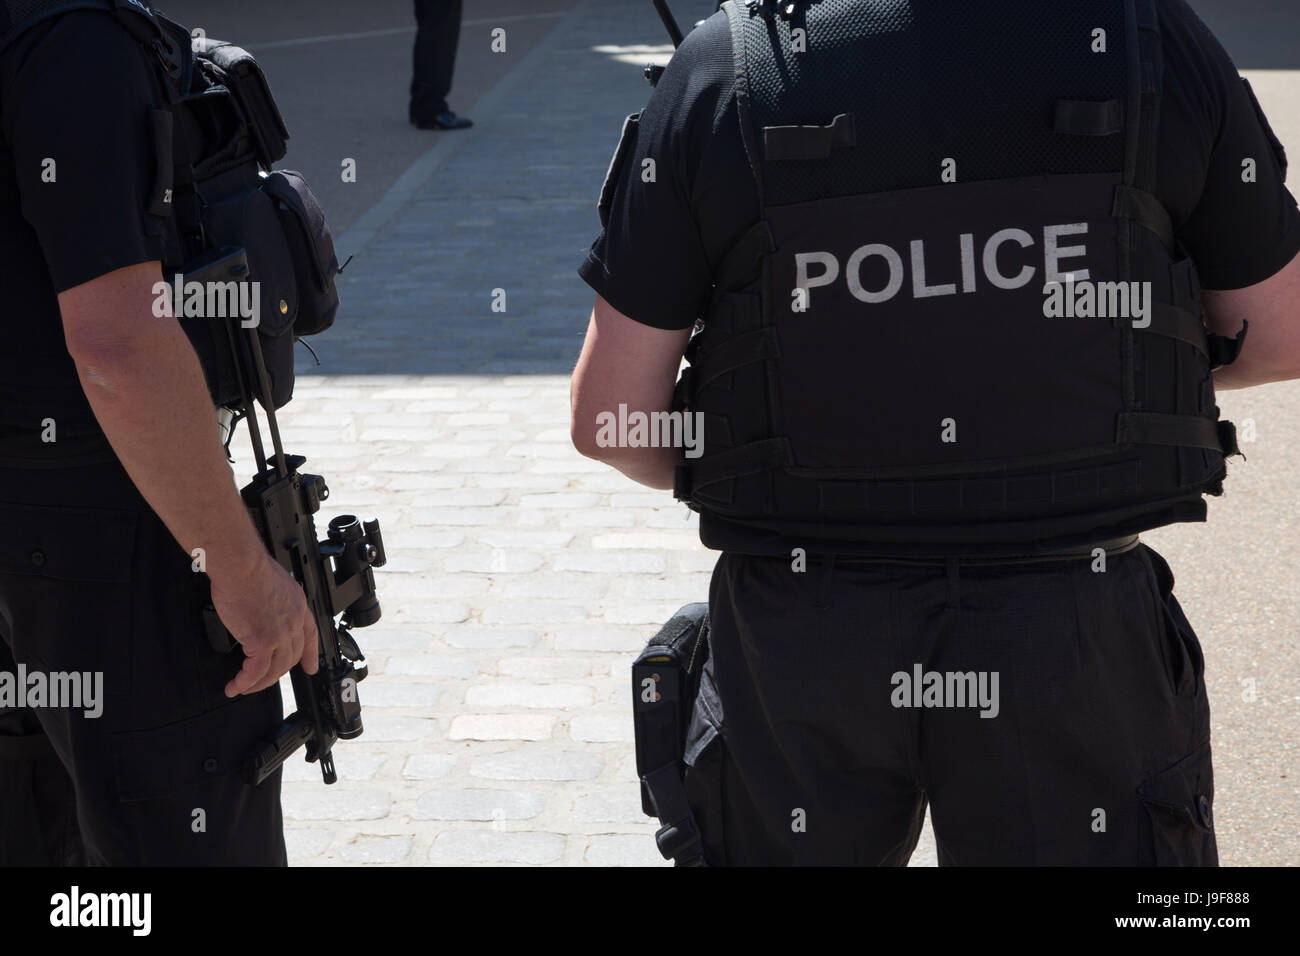 Londres, Reino Unido. 25 de mayo de 2017 la policía armada en Londres después de la Manchester ataque terrorista se produjo una explosión en el Manchester Arena en la tarde de mayo Foto de stock